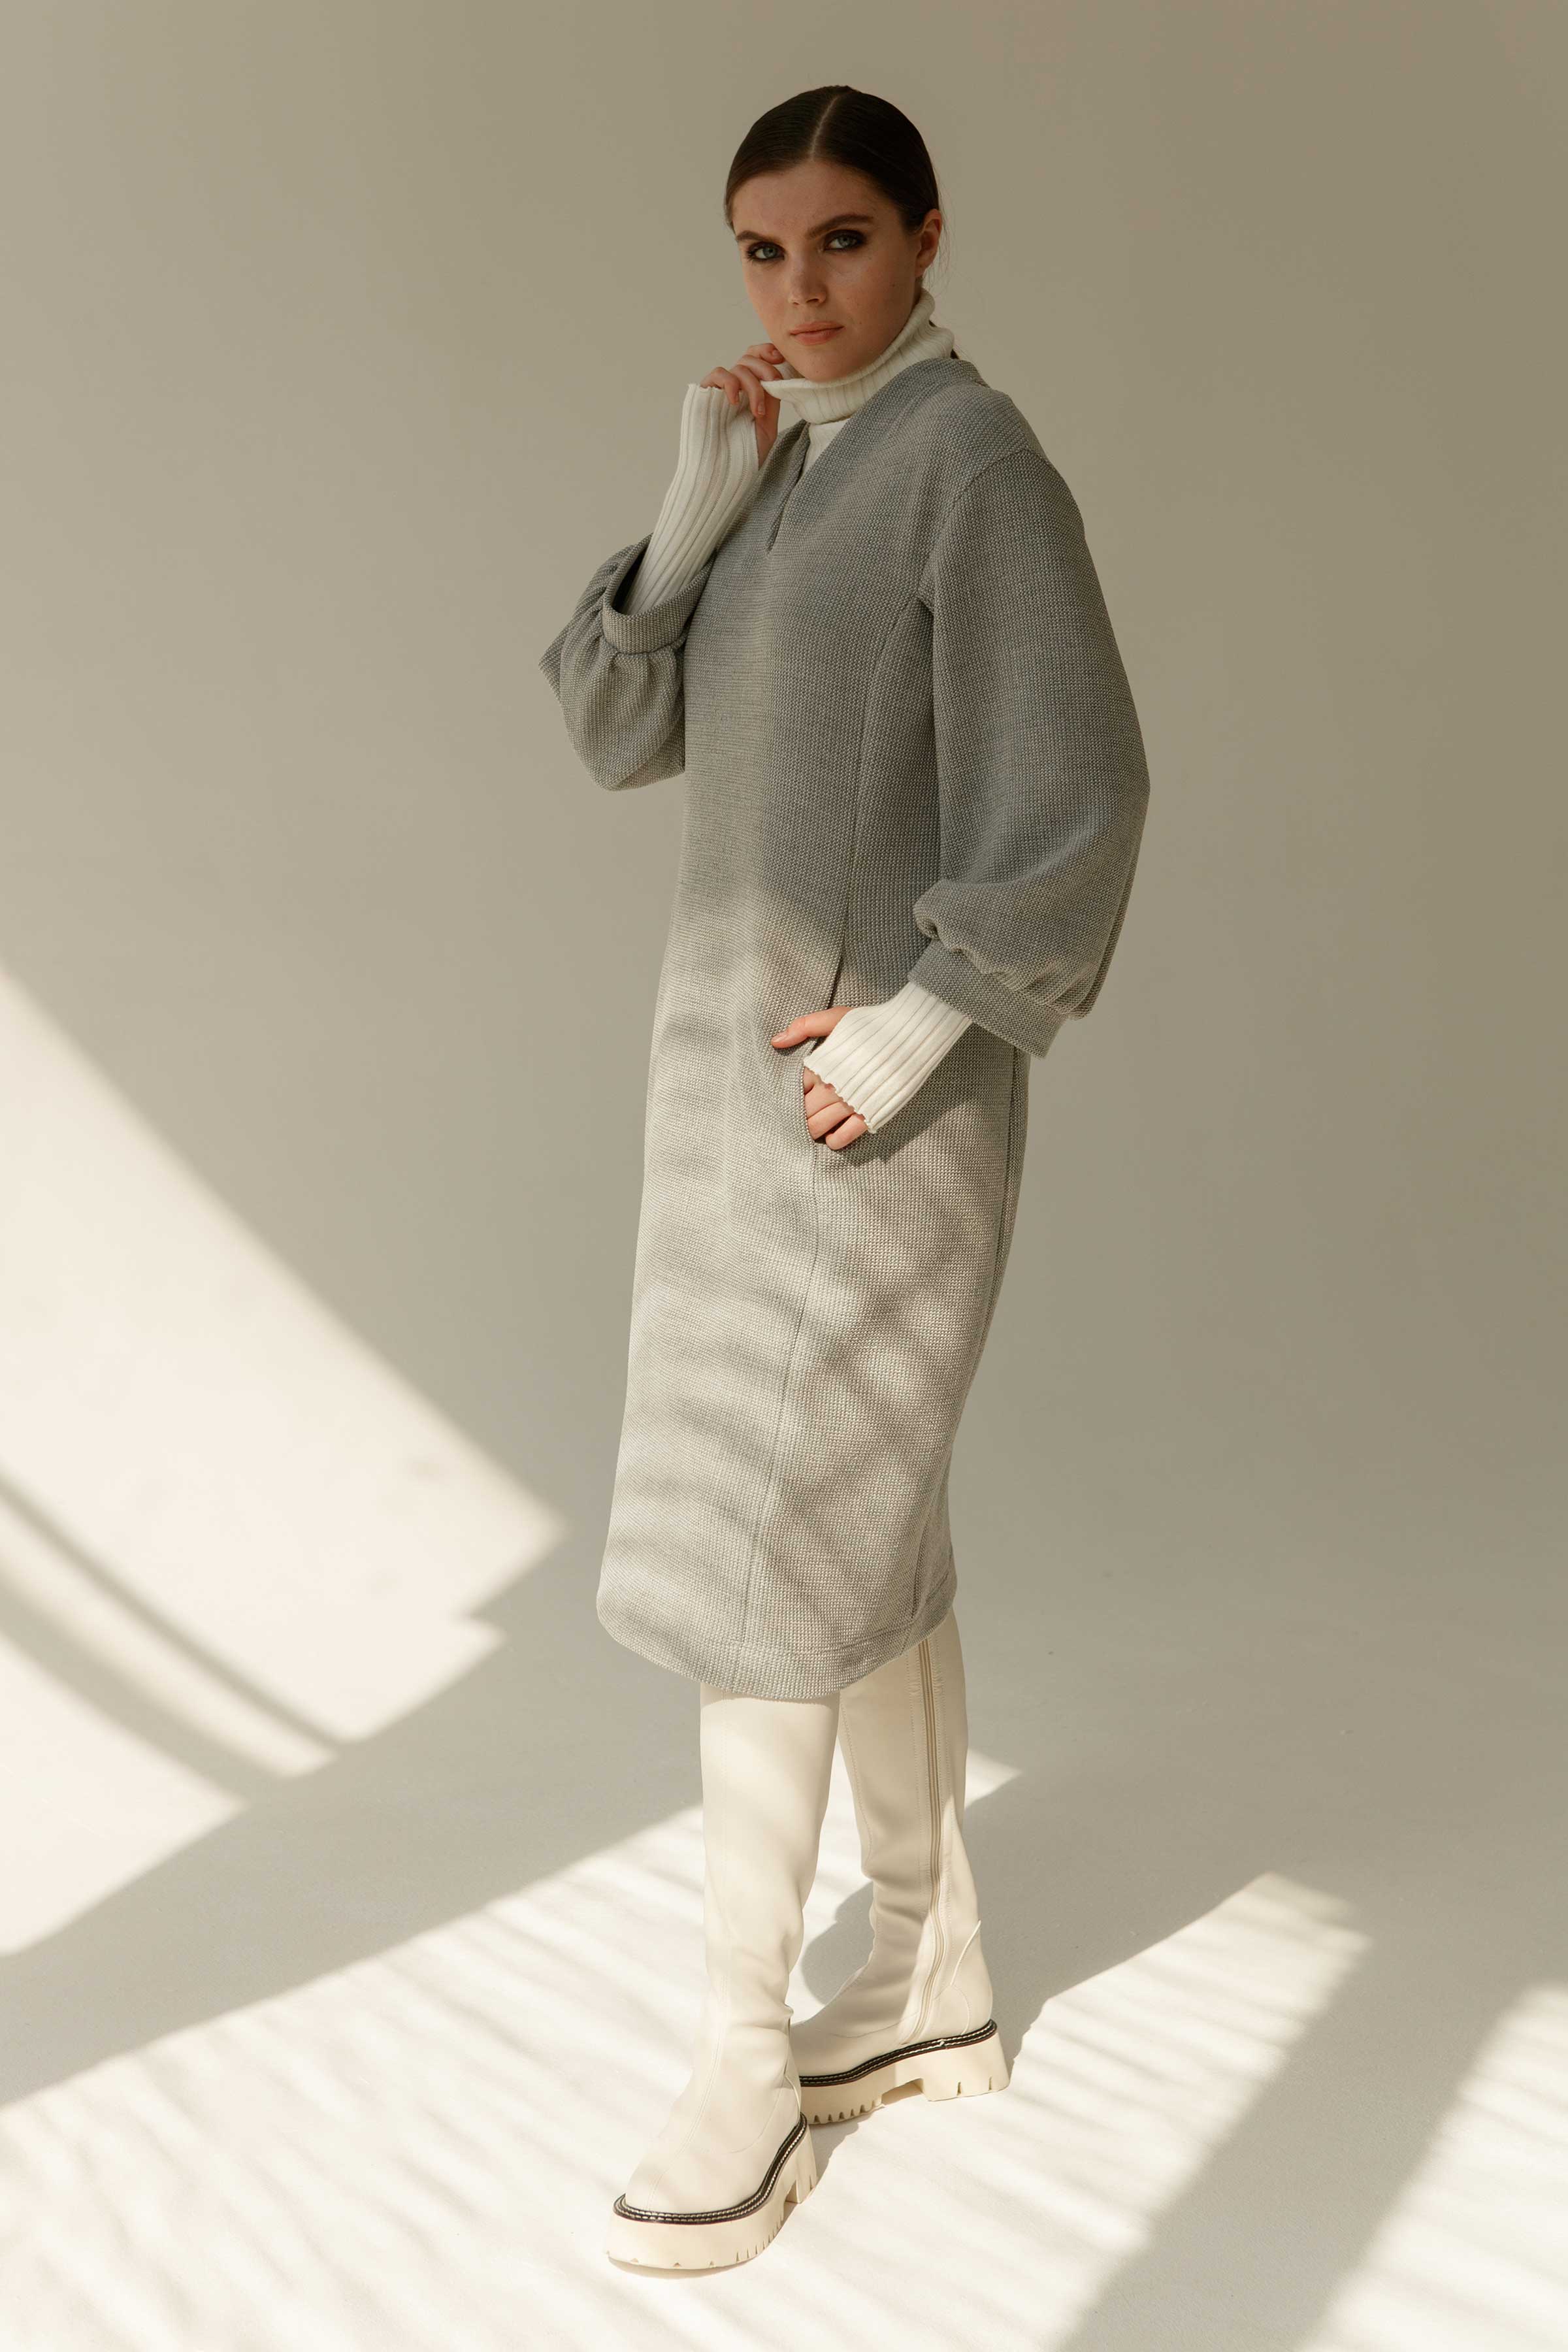 Платье Силуэт вафельный концепт 15 Серый меланж (melange gris) от Lesel (Лесель)! Заказывайте по ✆ 8 (800) 777 02 37